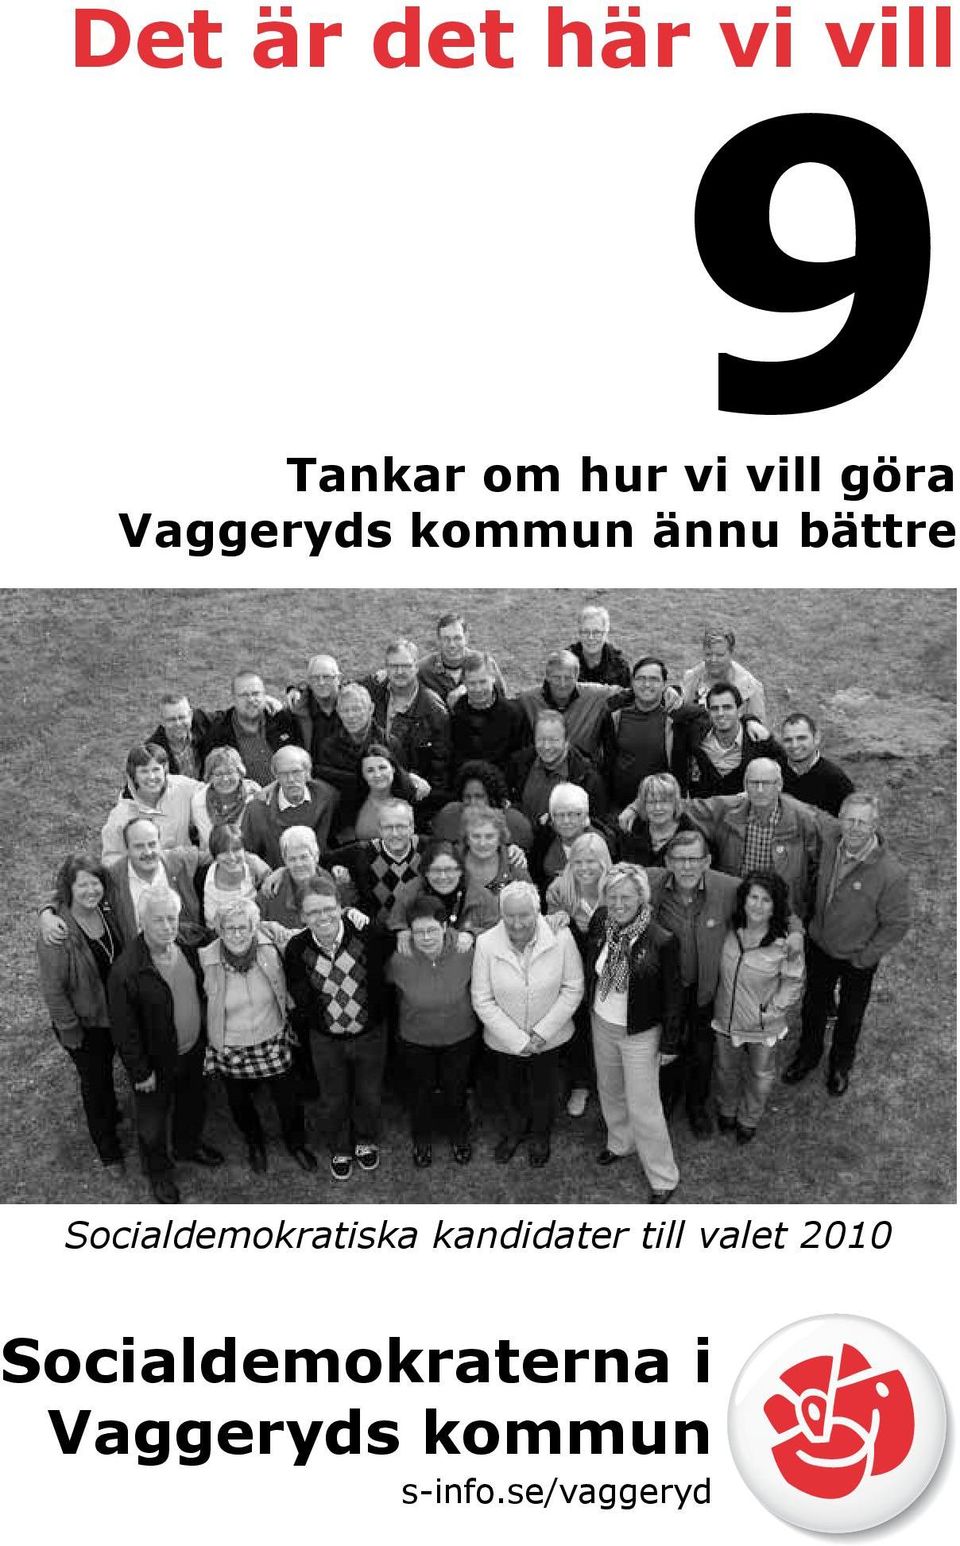 Socialdemokratiska kandidater till valet 2010